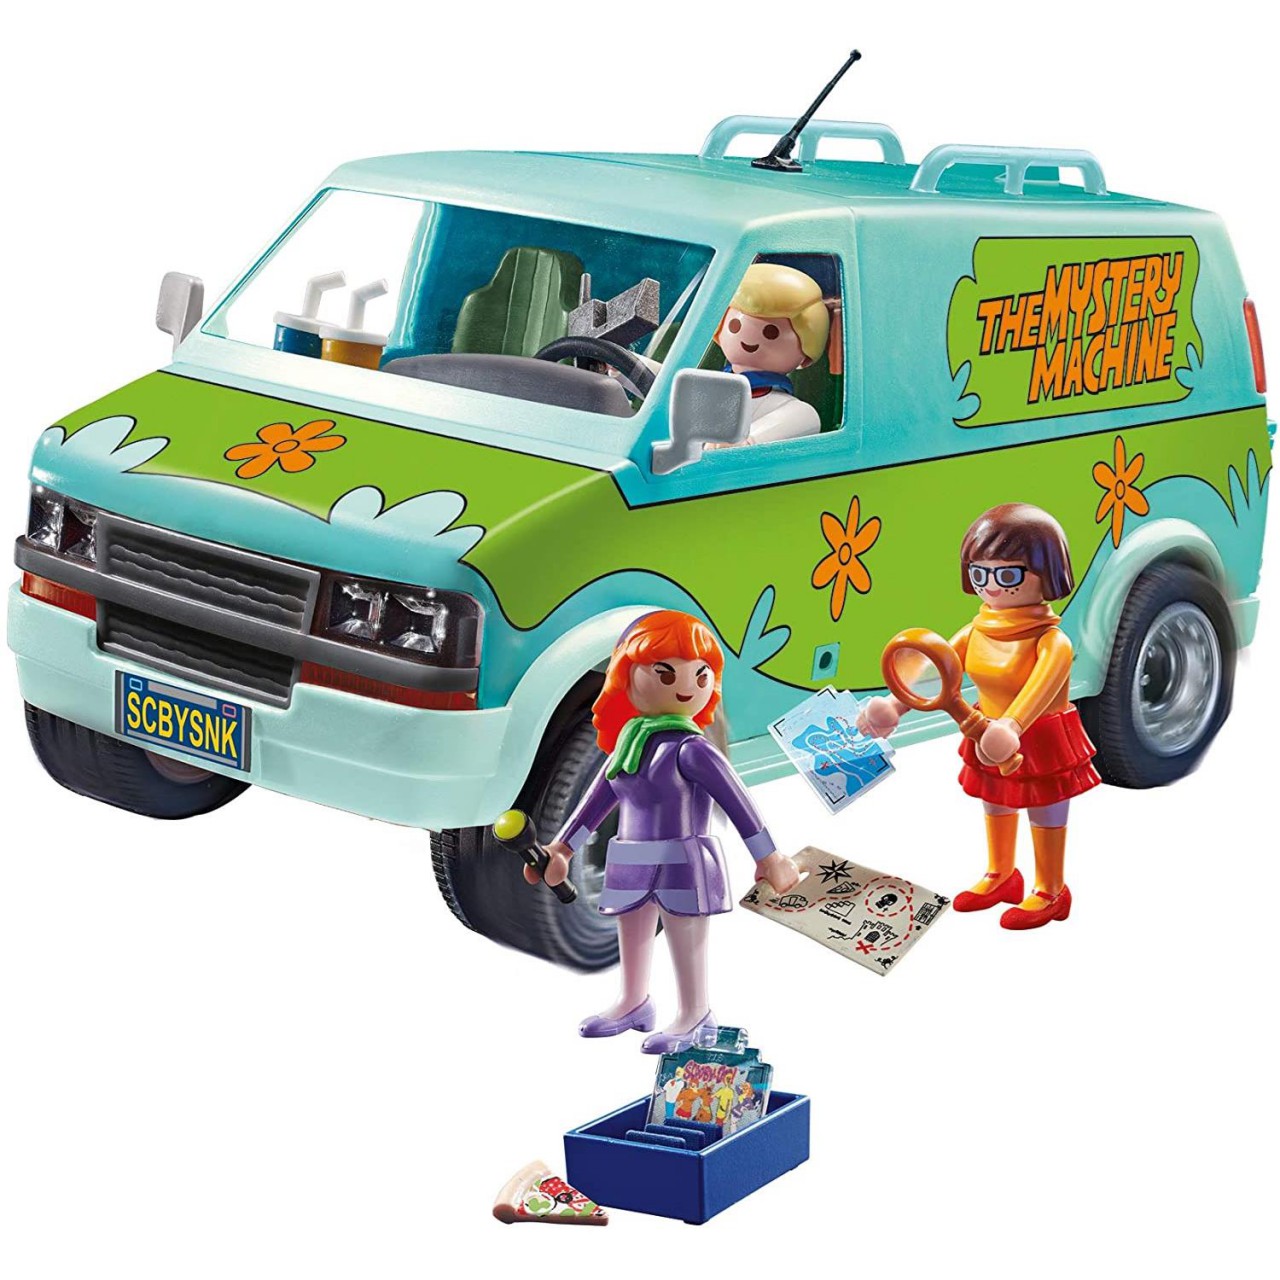 Playmobil 70286 SCOOBY-DOO! Mystery Machine